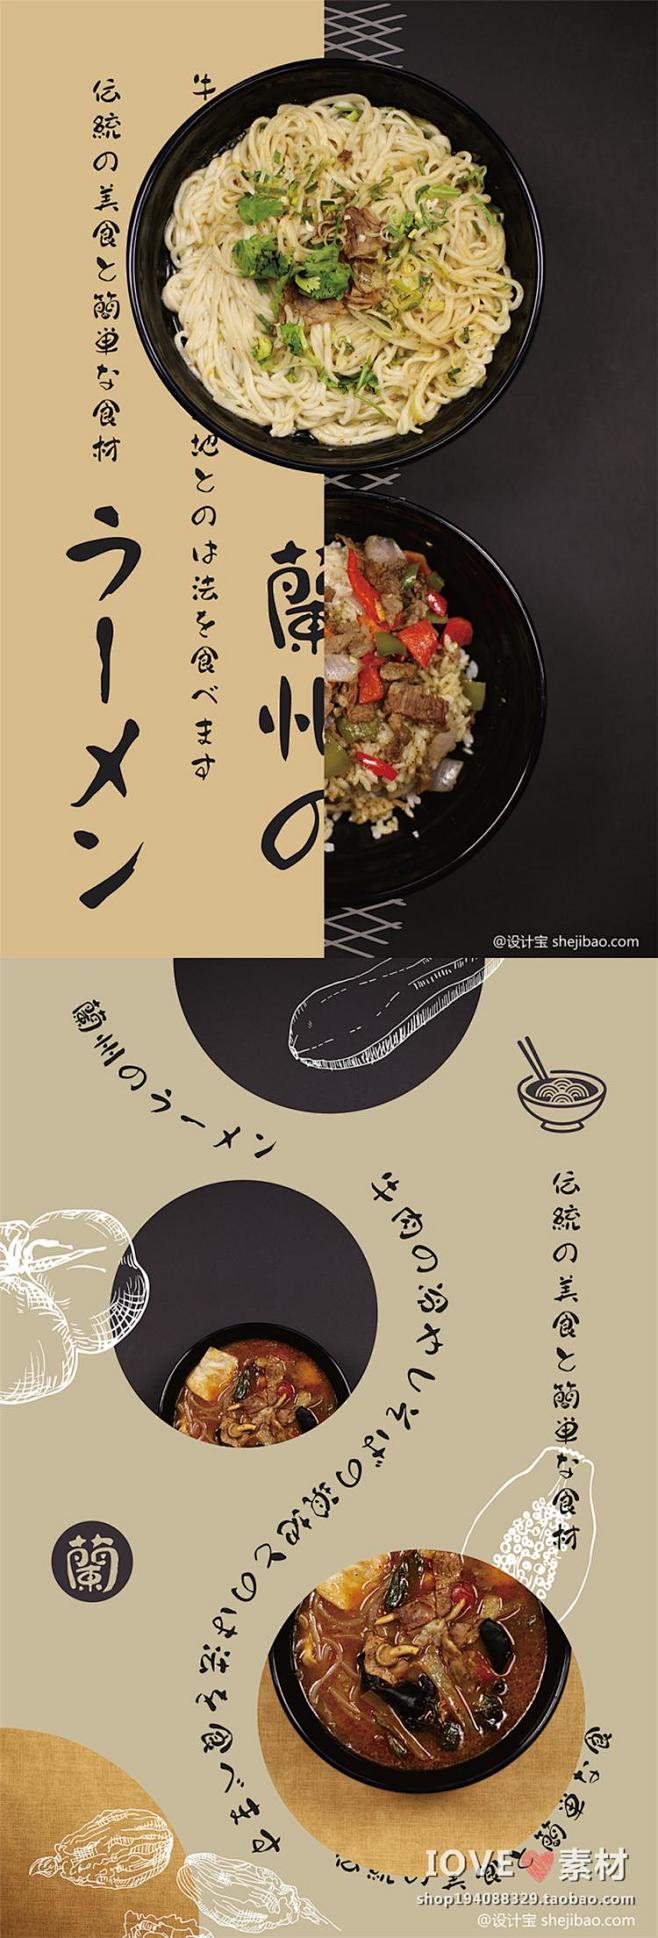 文艺日系杂志风格小清新美食食物海报文字排...